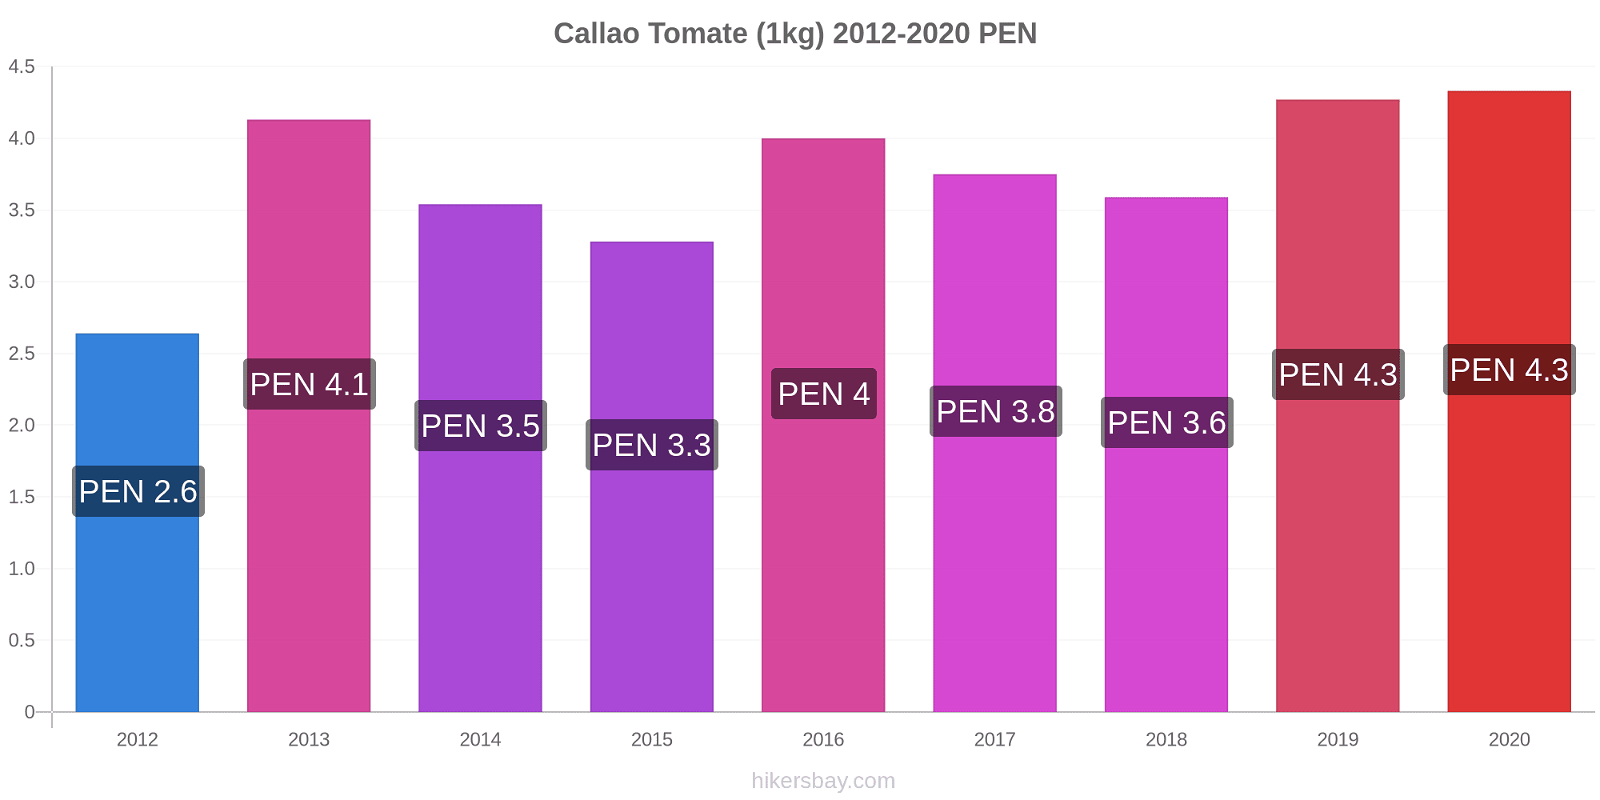 Callao changements de prix Tomate (1kg) hikersbay.com